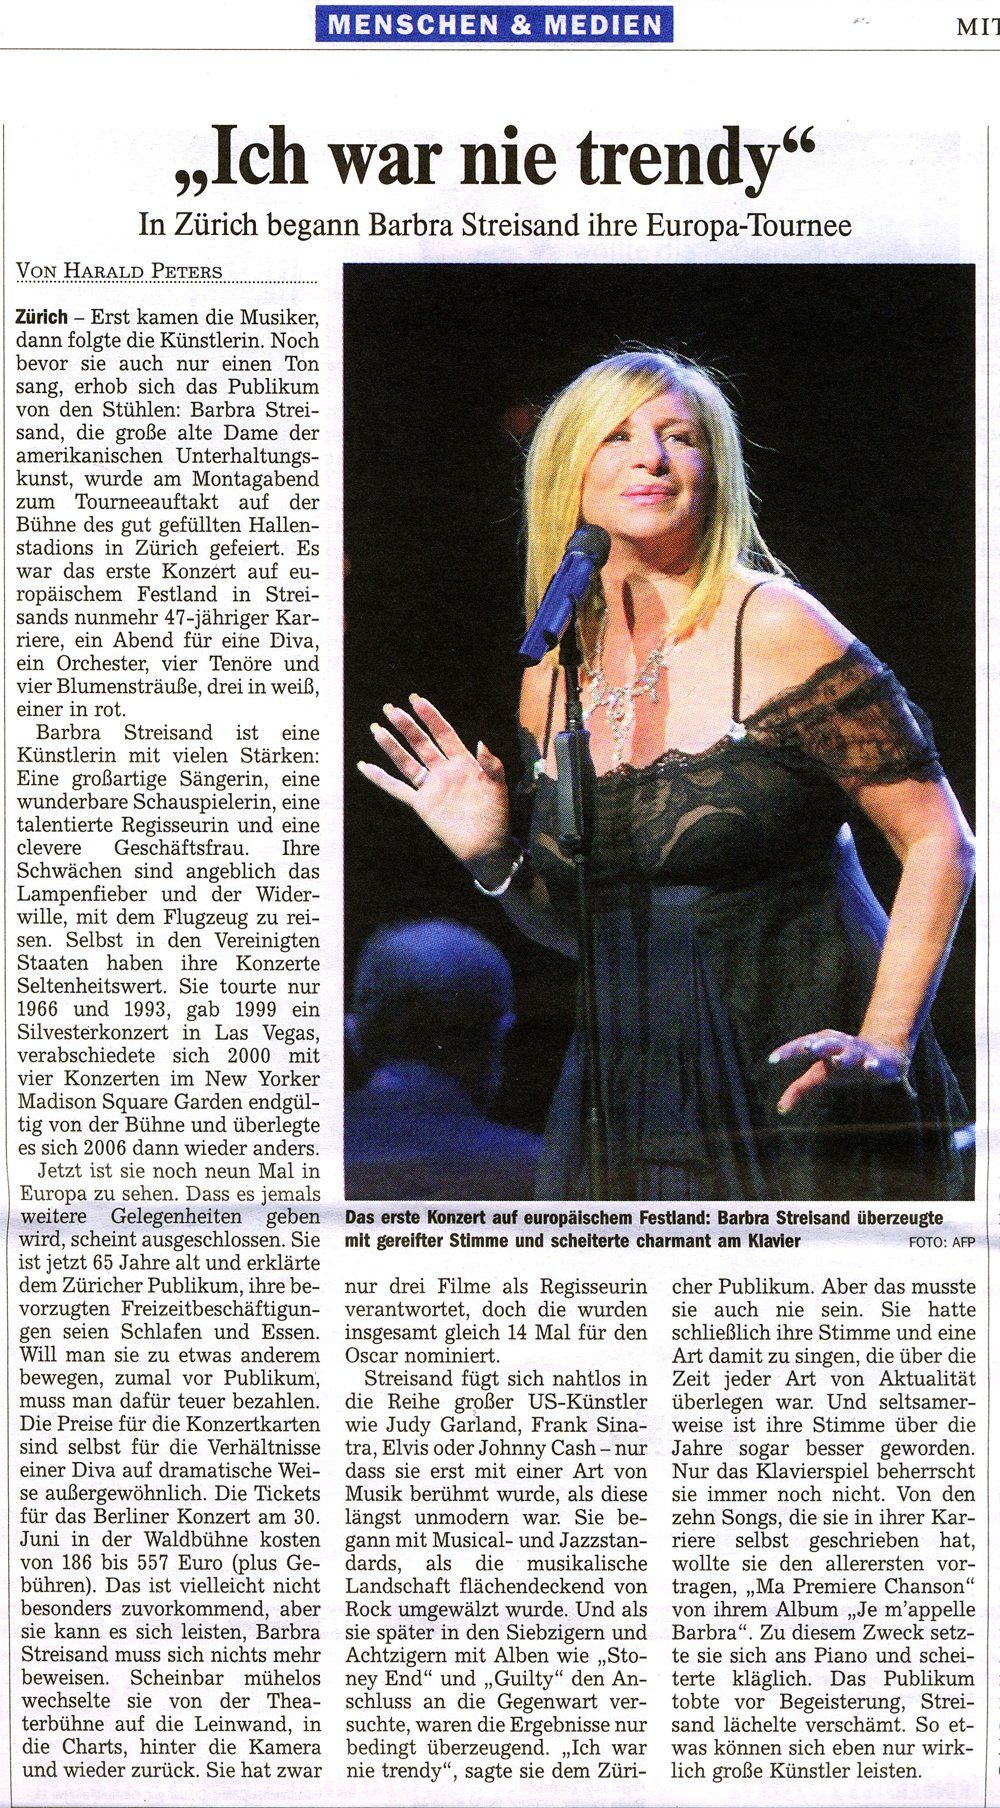 Zurich newspaper review of Streisand's concert.